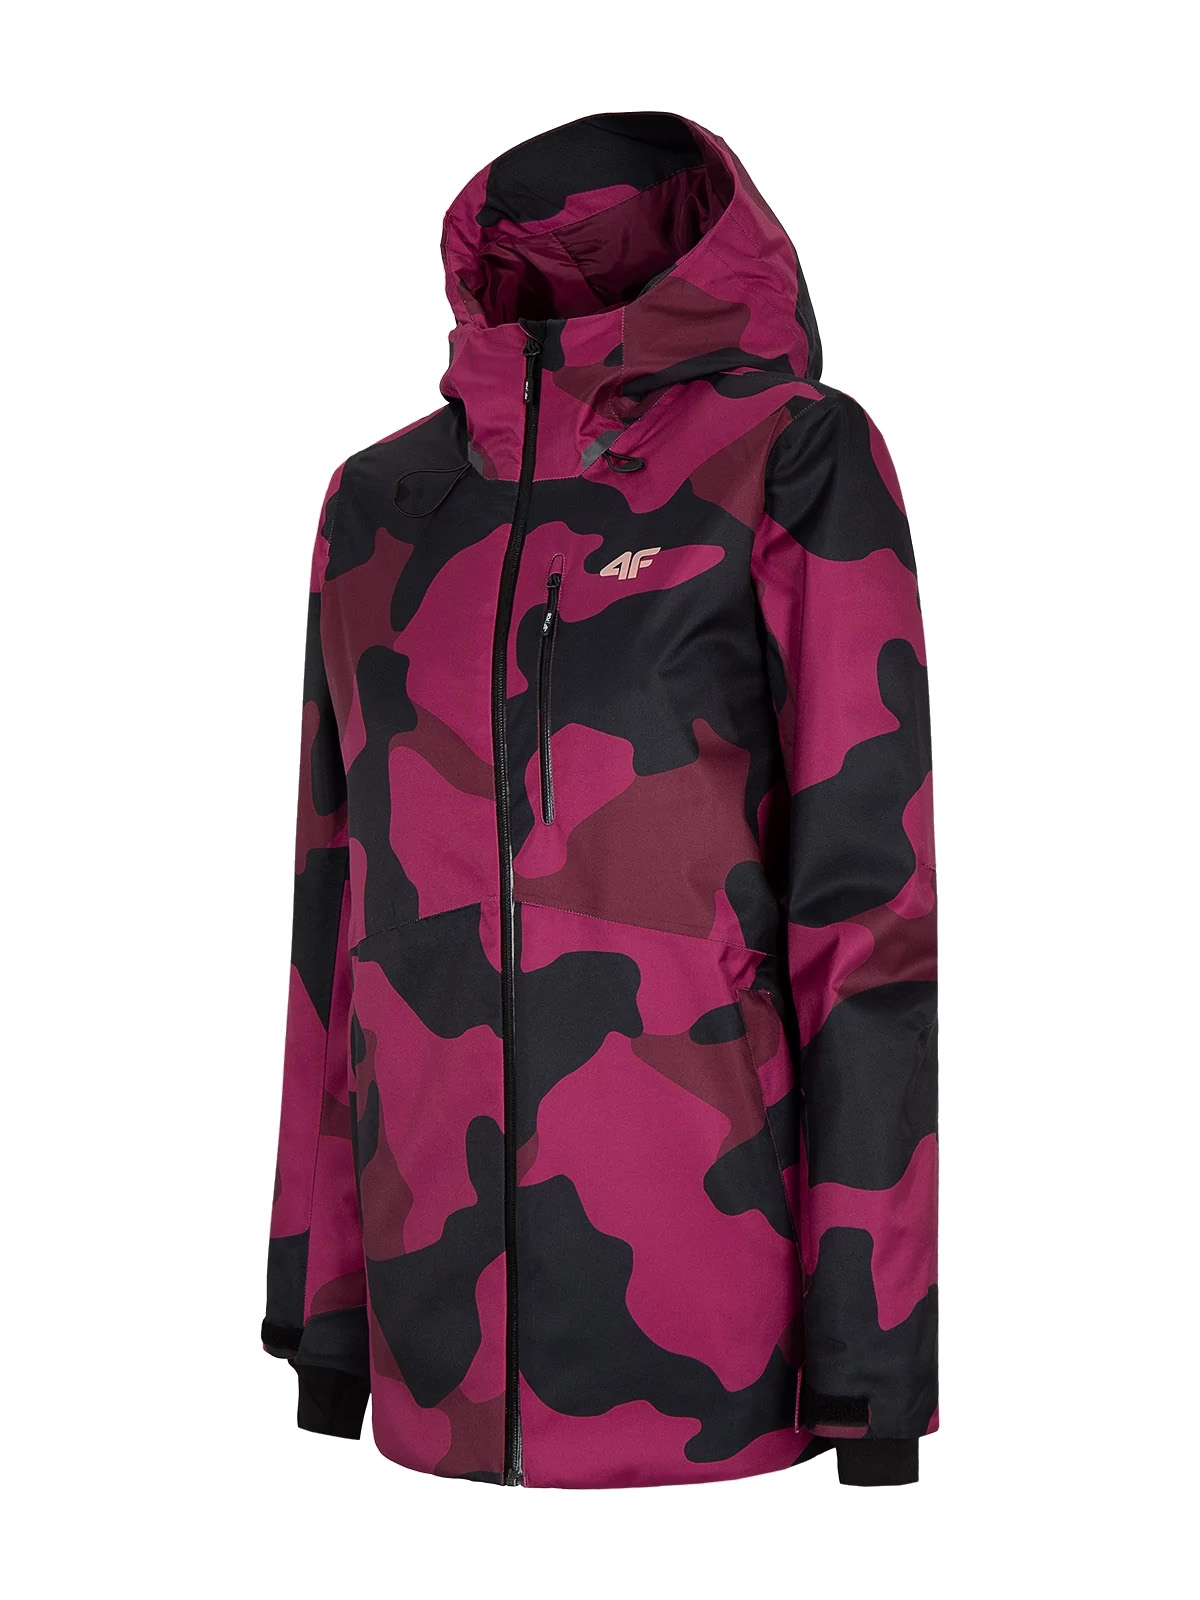 фото Куртка женская 4f women's snowboard jackets бордовая xs